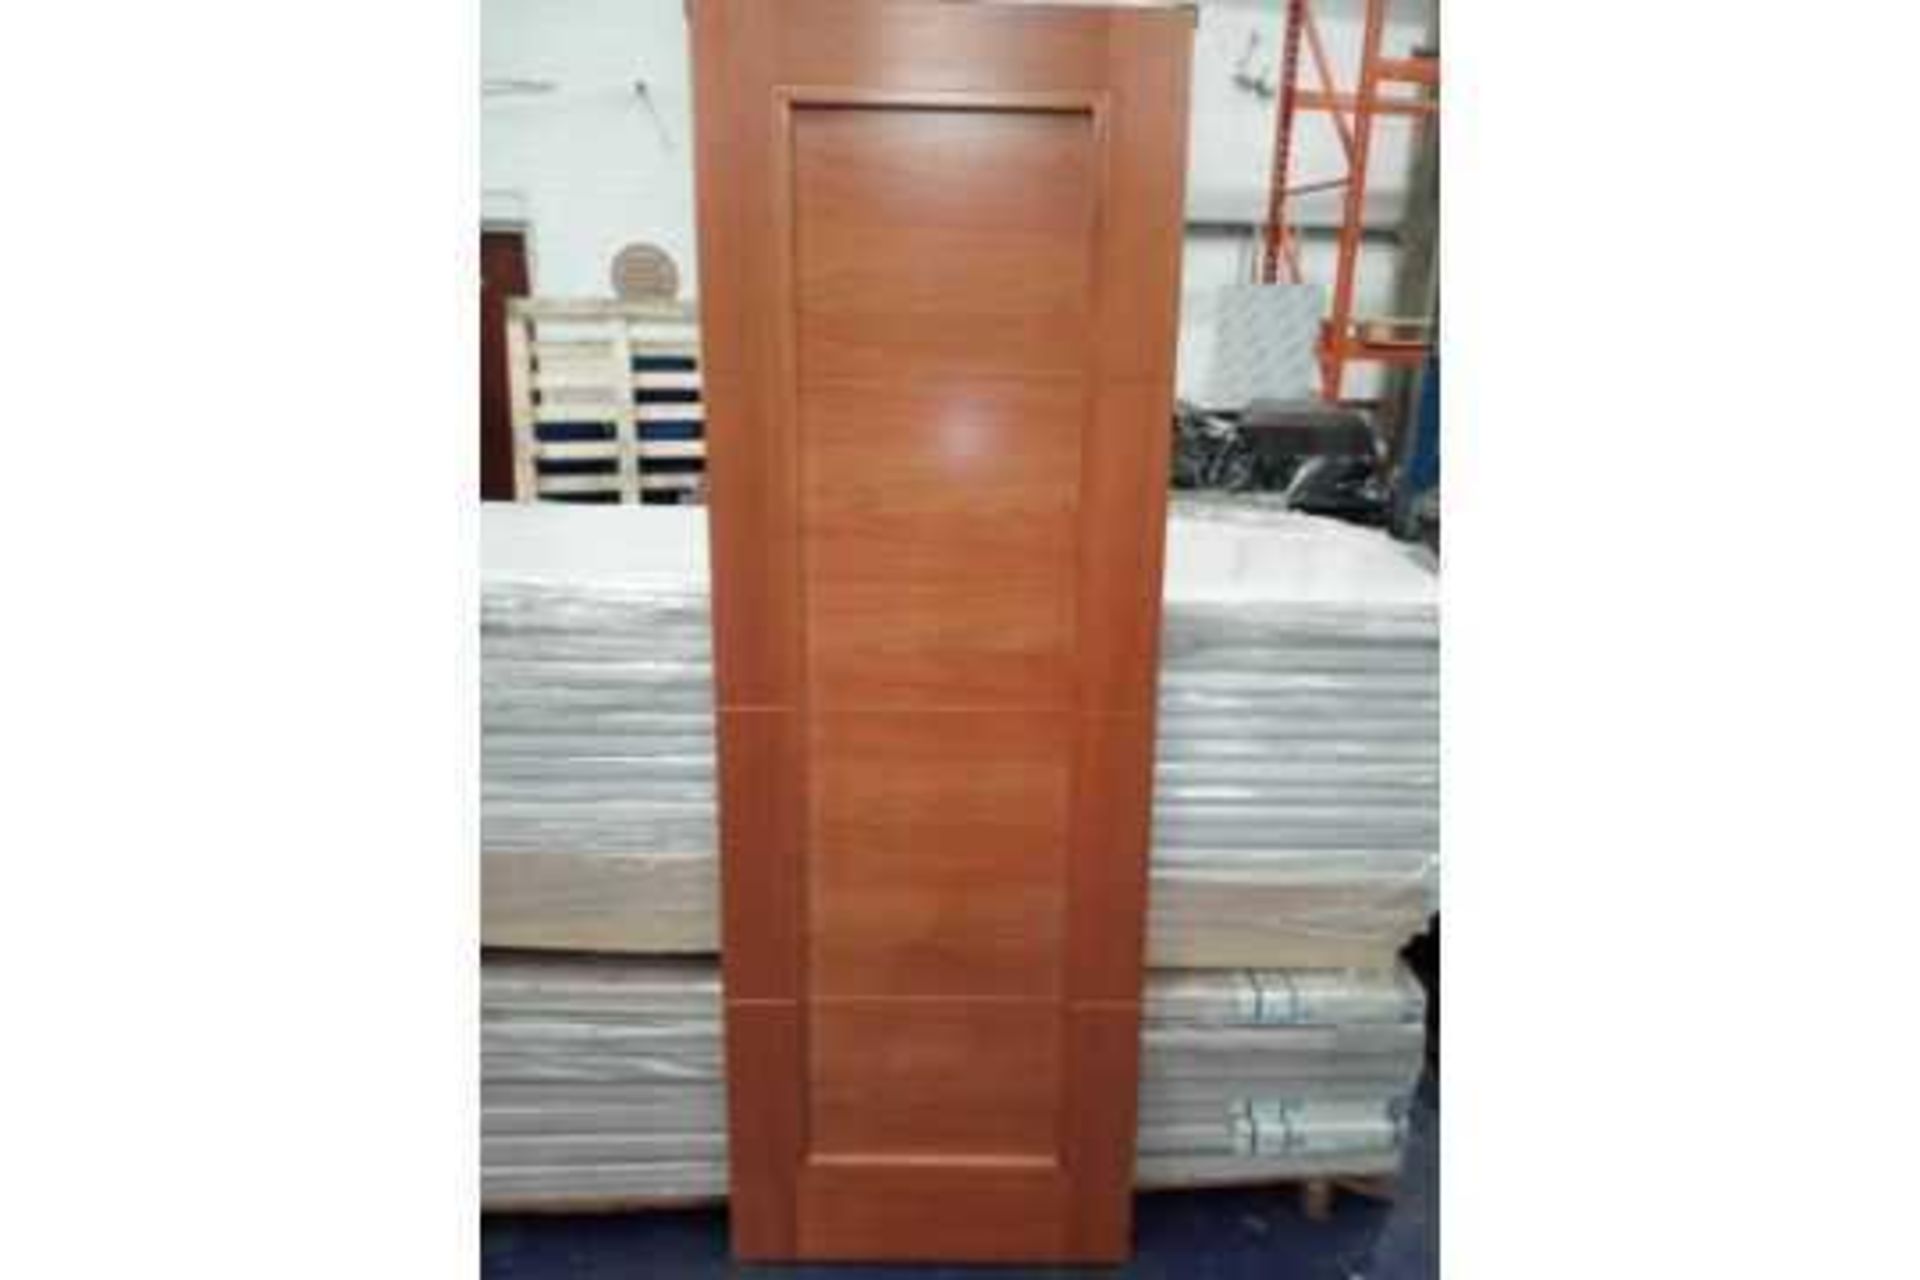 RRP £4200 Brand New 4 Panel Solid Cherry Hardwood Doors